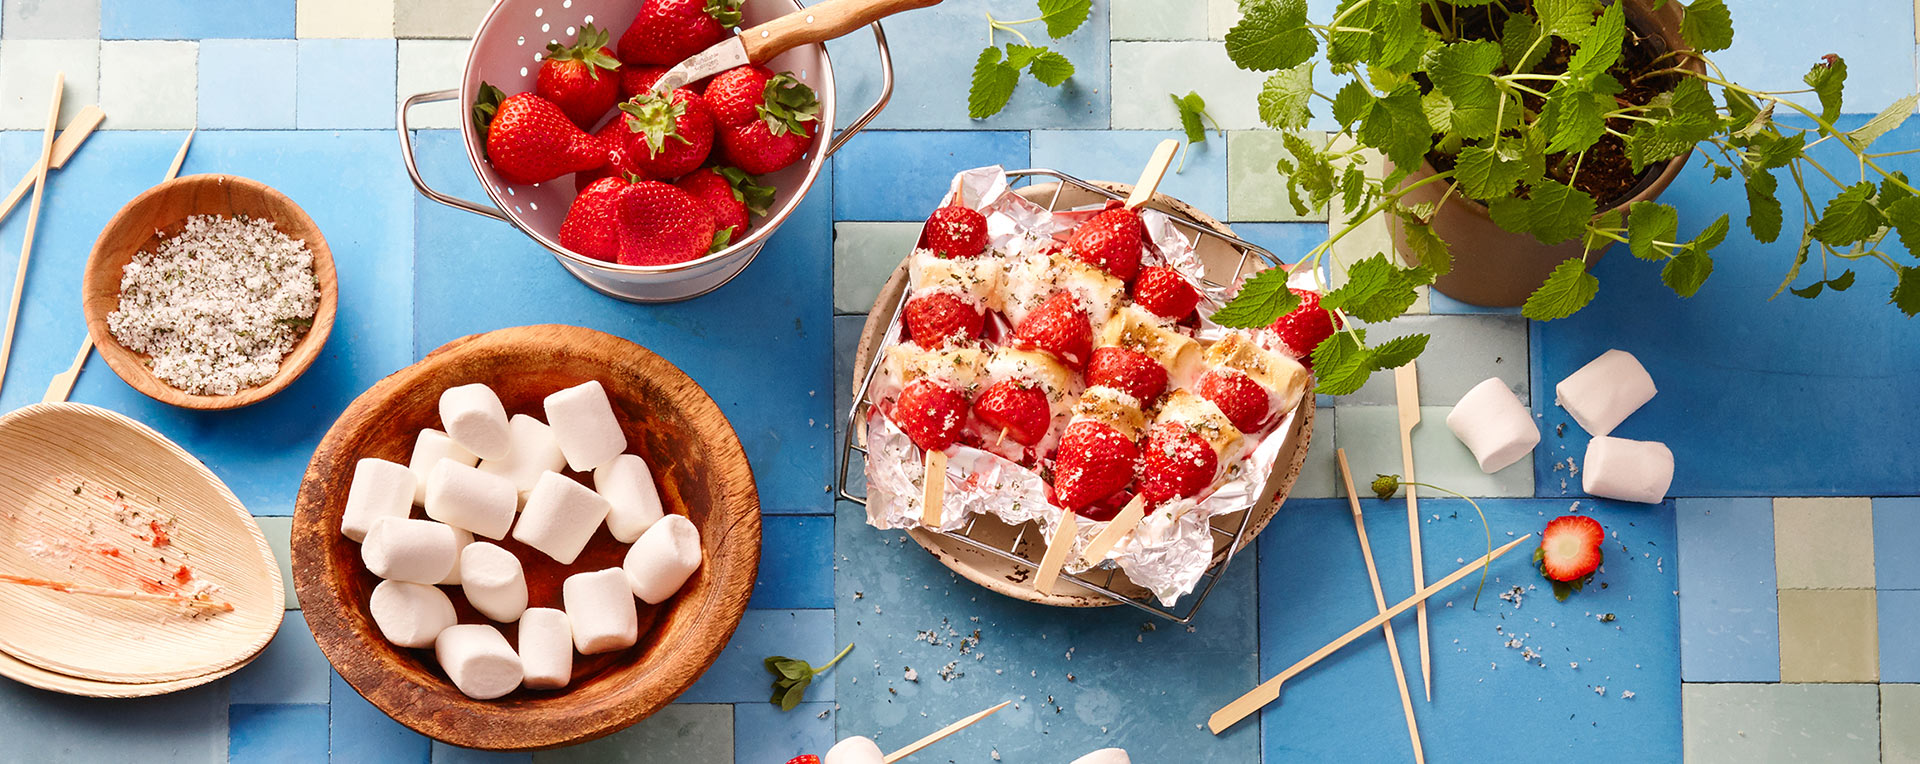 Erdbeer-Marshmallow-Spieße vom Grill | REWE Rezept